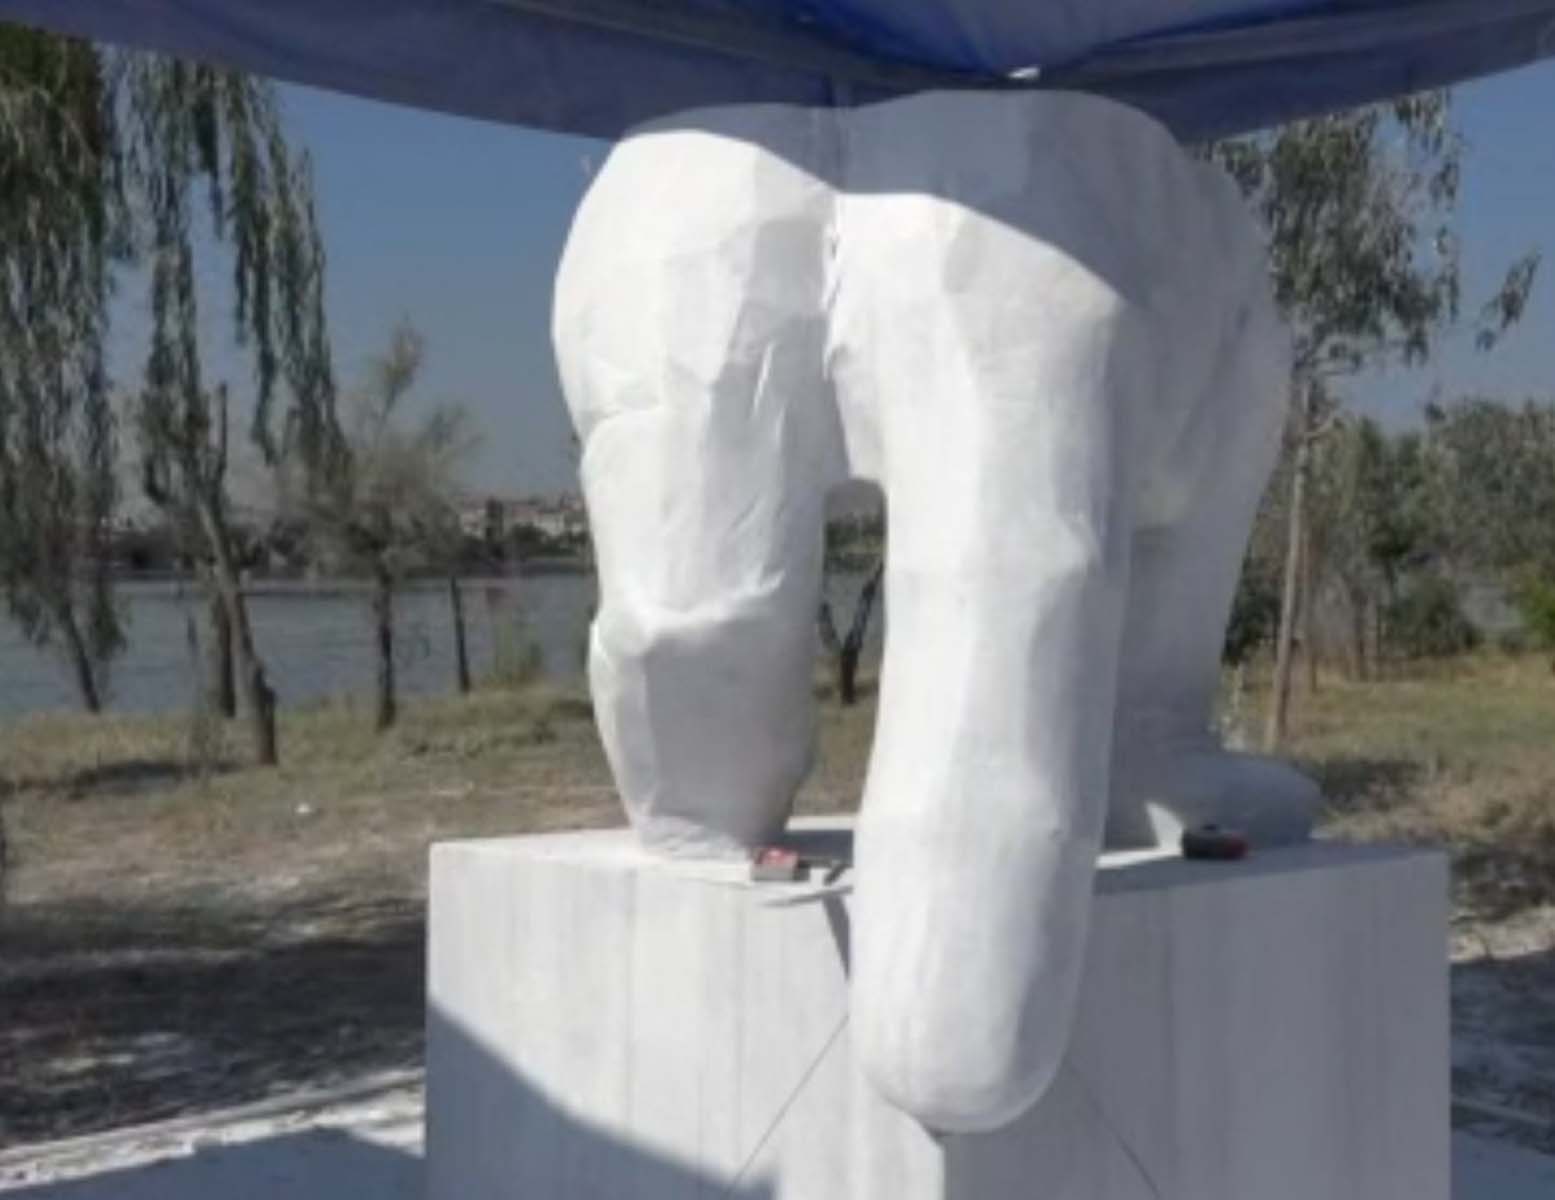 Heykel belediyeciliği sürüyor! CHP'li Büyükçekmece Belediyesinin heykel festivali şaşkınlık yarattı, görenler anlam veremedi 